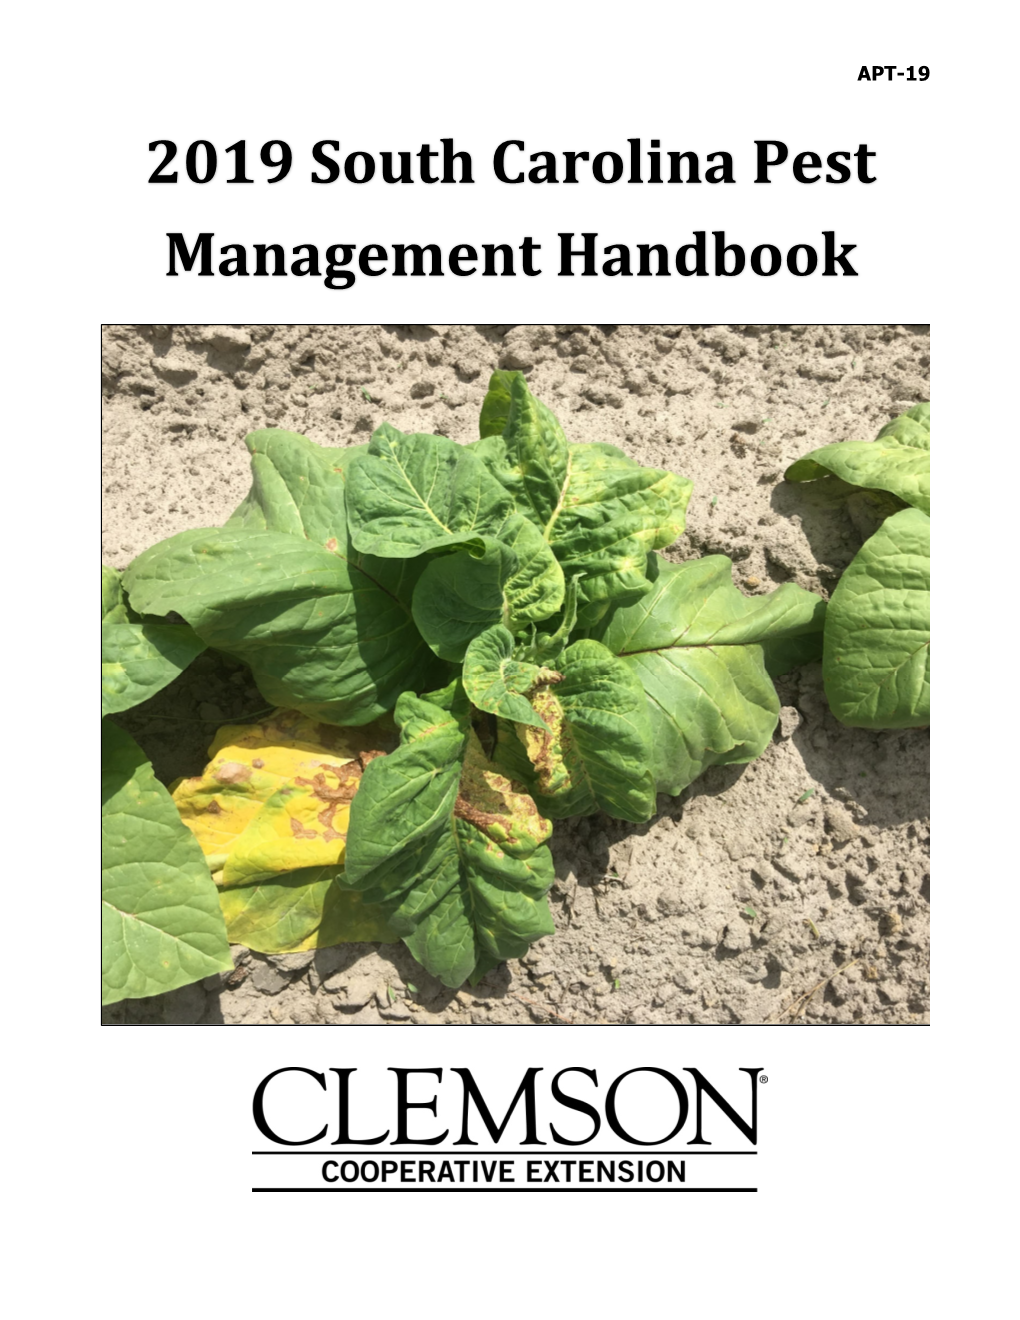 2019 South Carolina Pest Management Handbook